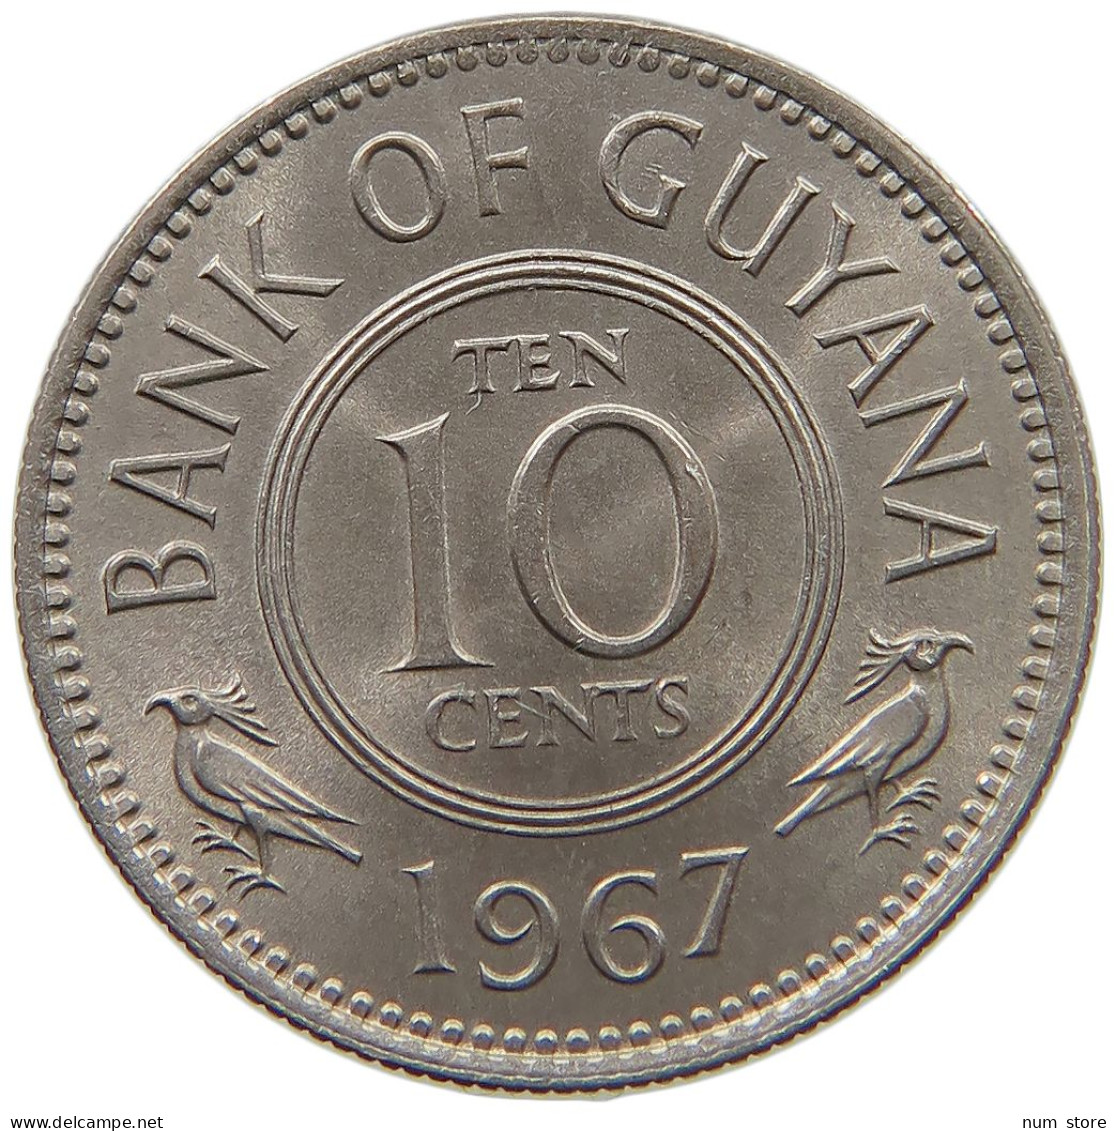 GUYANA 10 CENTS 1967 TOP #s061 0533 - Guyana